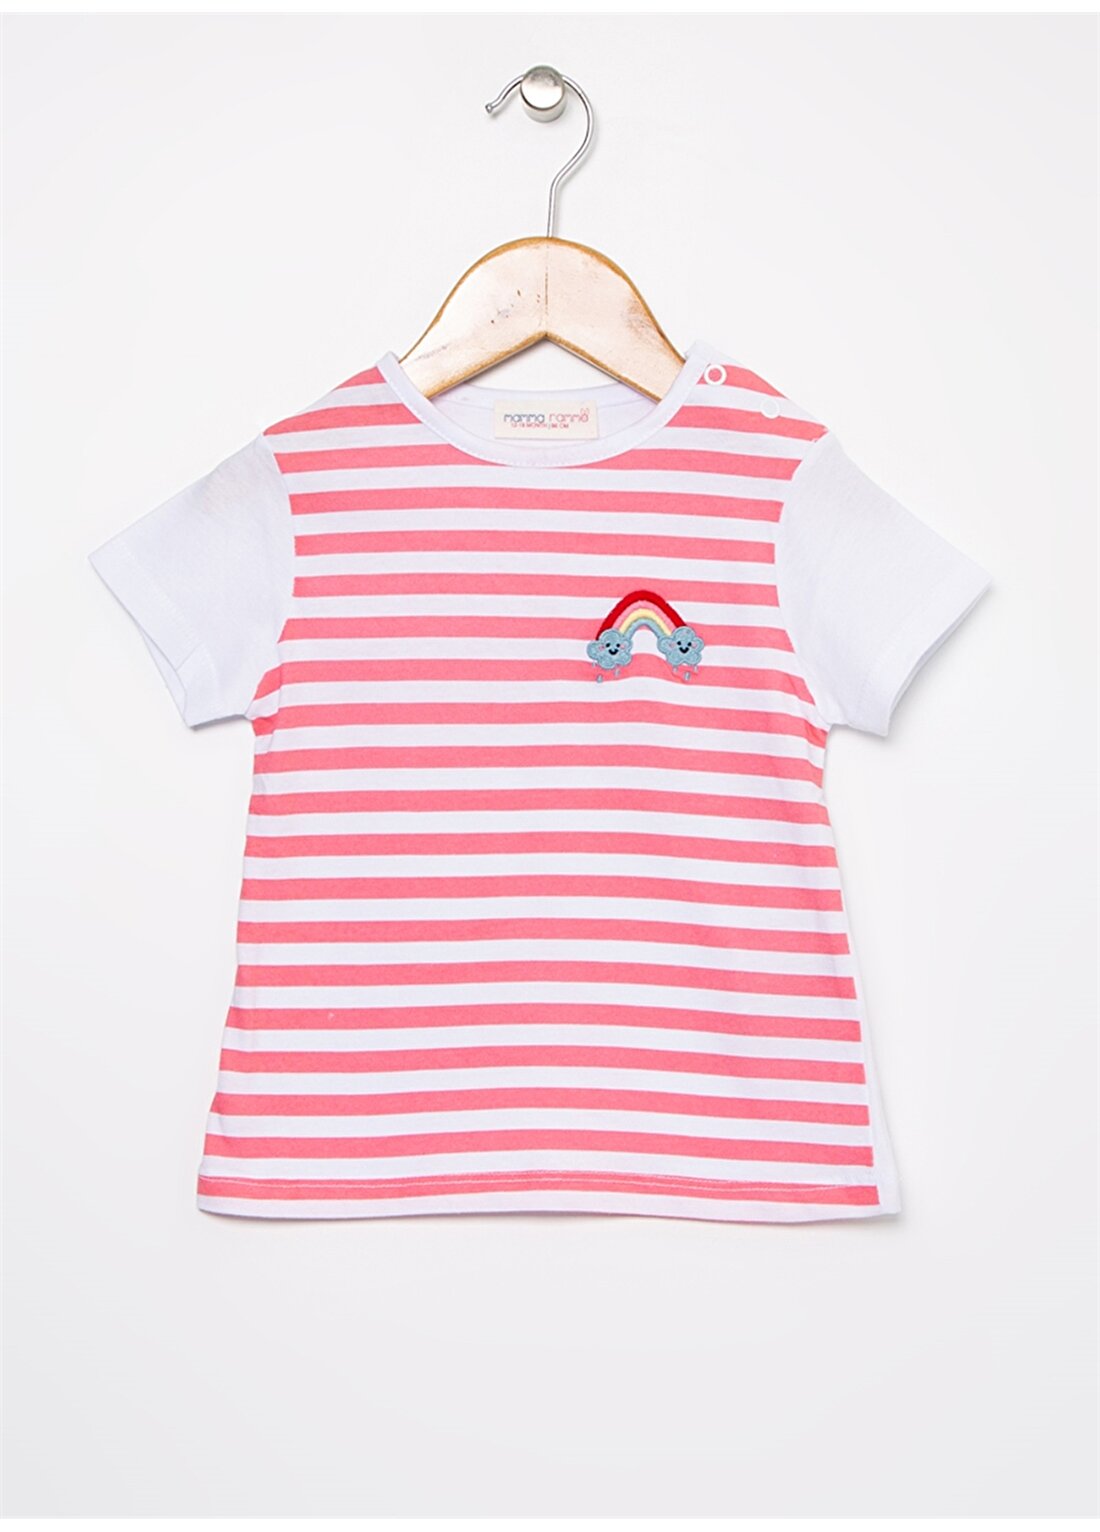 Mammaramma Pembe - Beyaz Kız Bebek T-Shirt HG-08